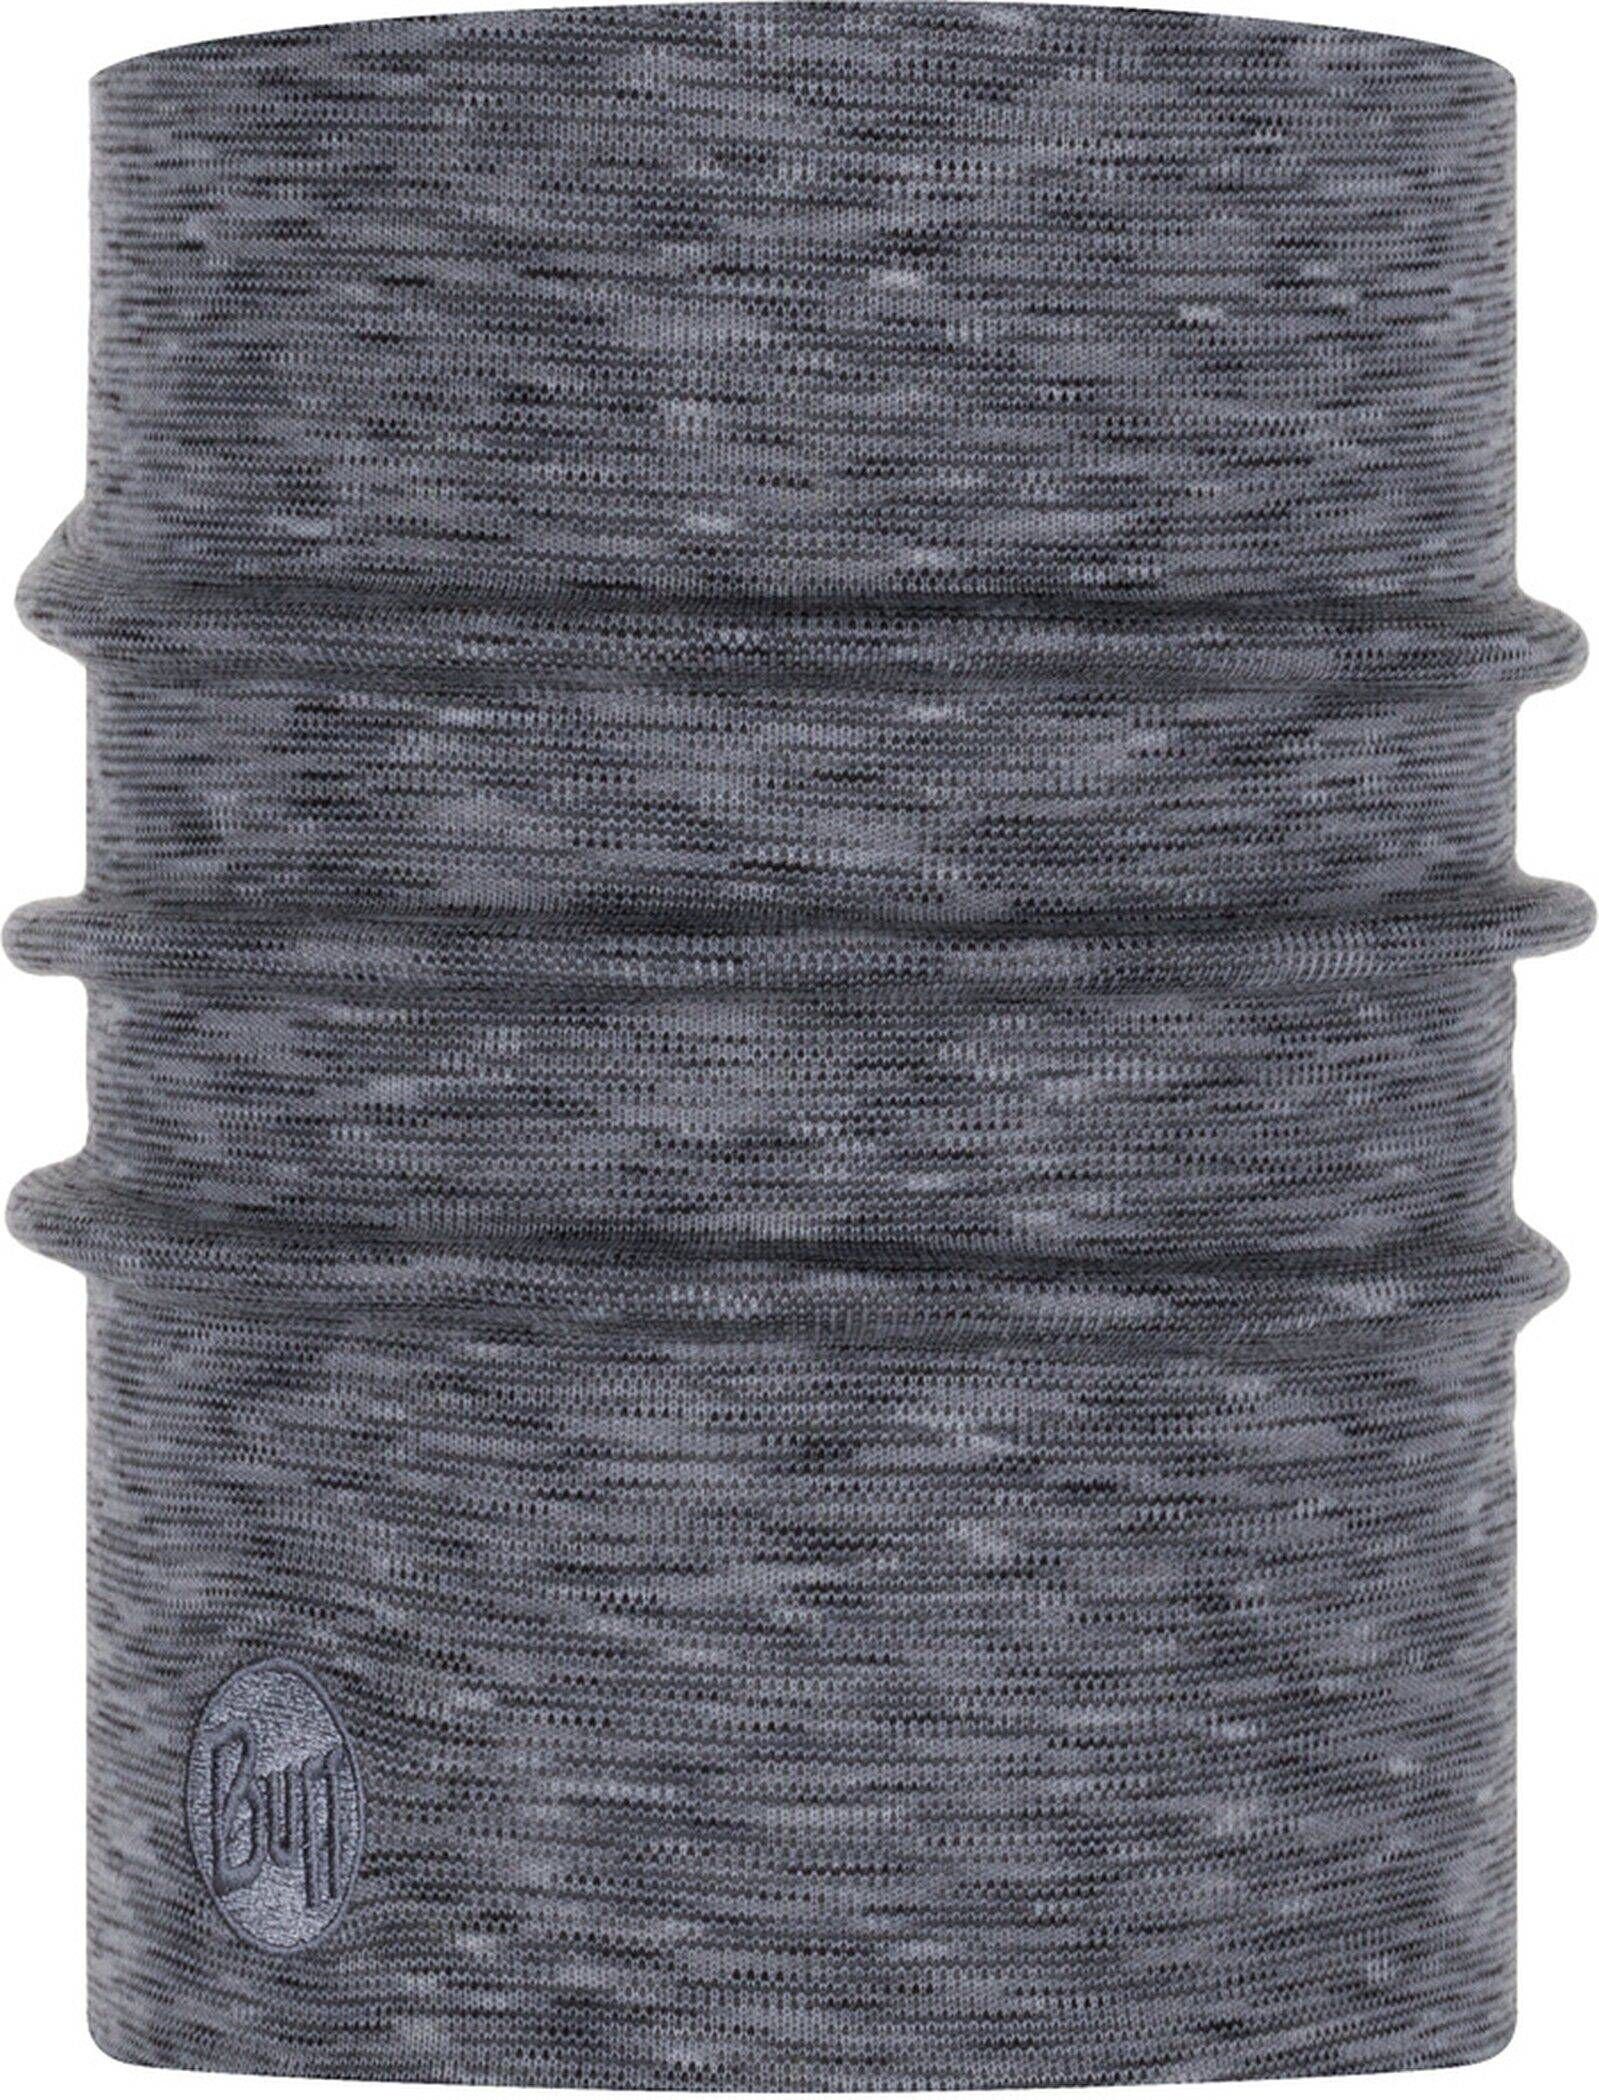 Buff Loop Halswärmer Grau-fog multi stripes grey